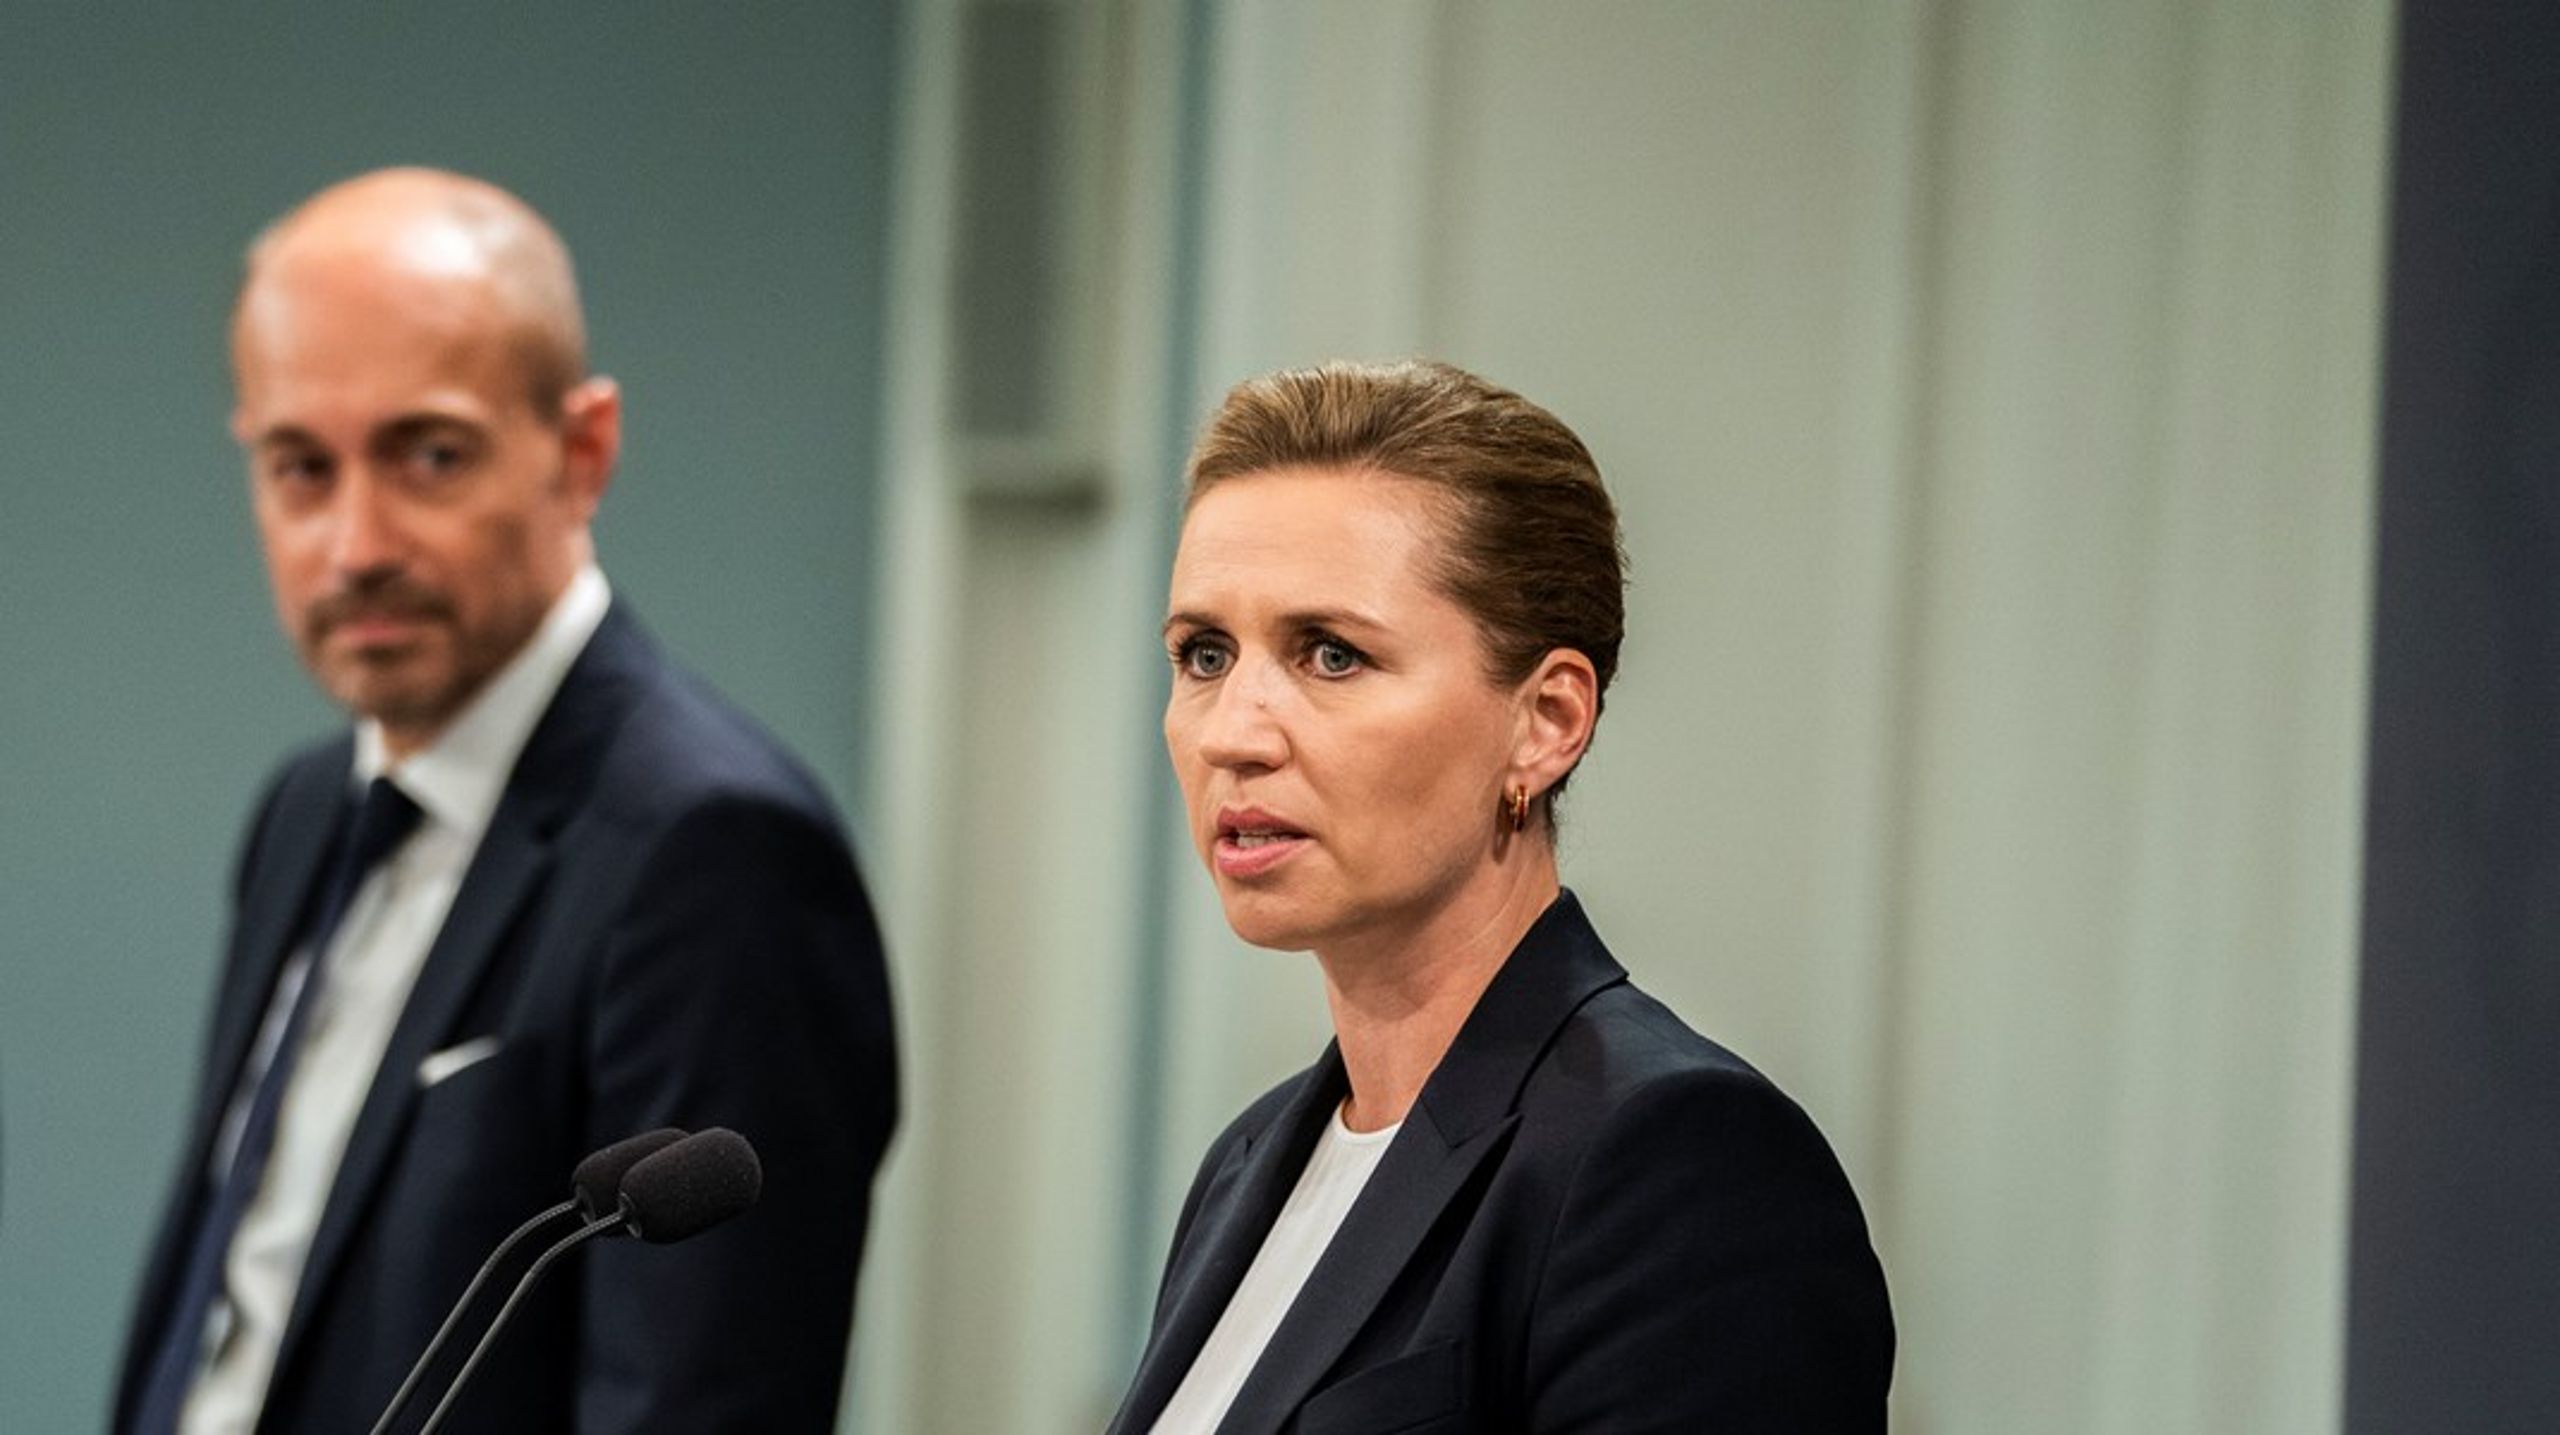 <div>

“Där det är vettigt att ta ledningen i Danmark måste vi göra det“, svarade Danmarks nya miljöminister</div>